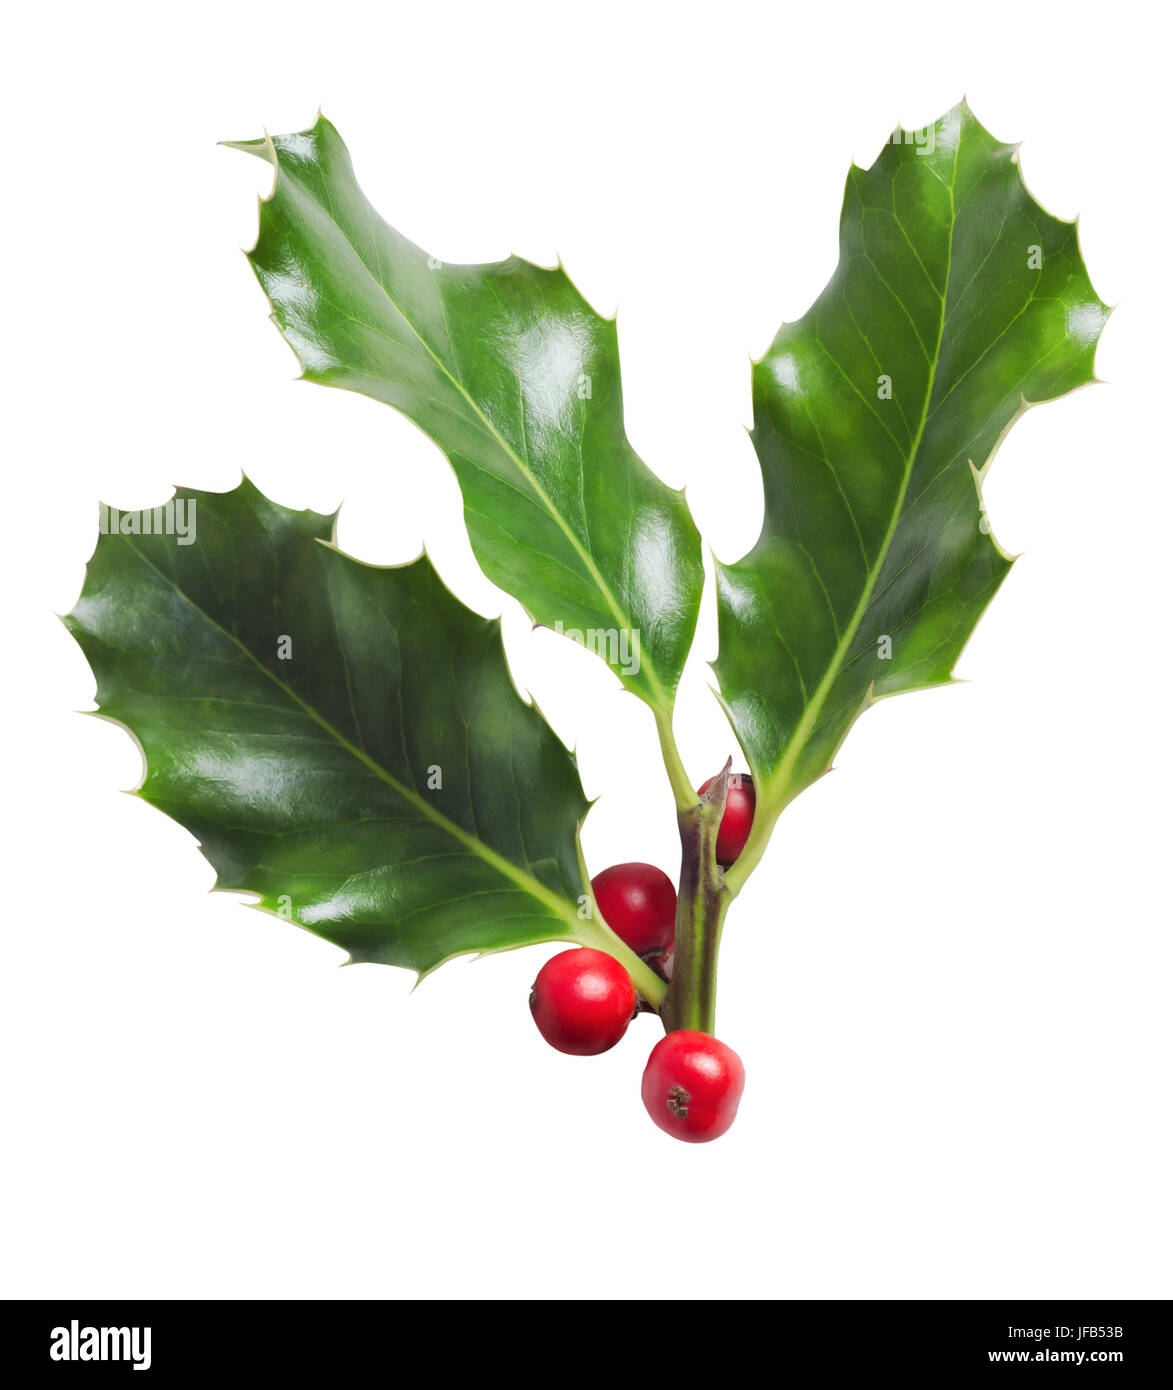 Un Natale di cut-out. Rametto di tre foglie di agrifoglio con bacche rosse, isolato su sfondo bianco. Foto Stock